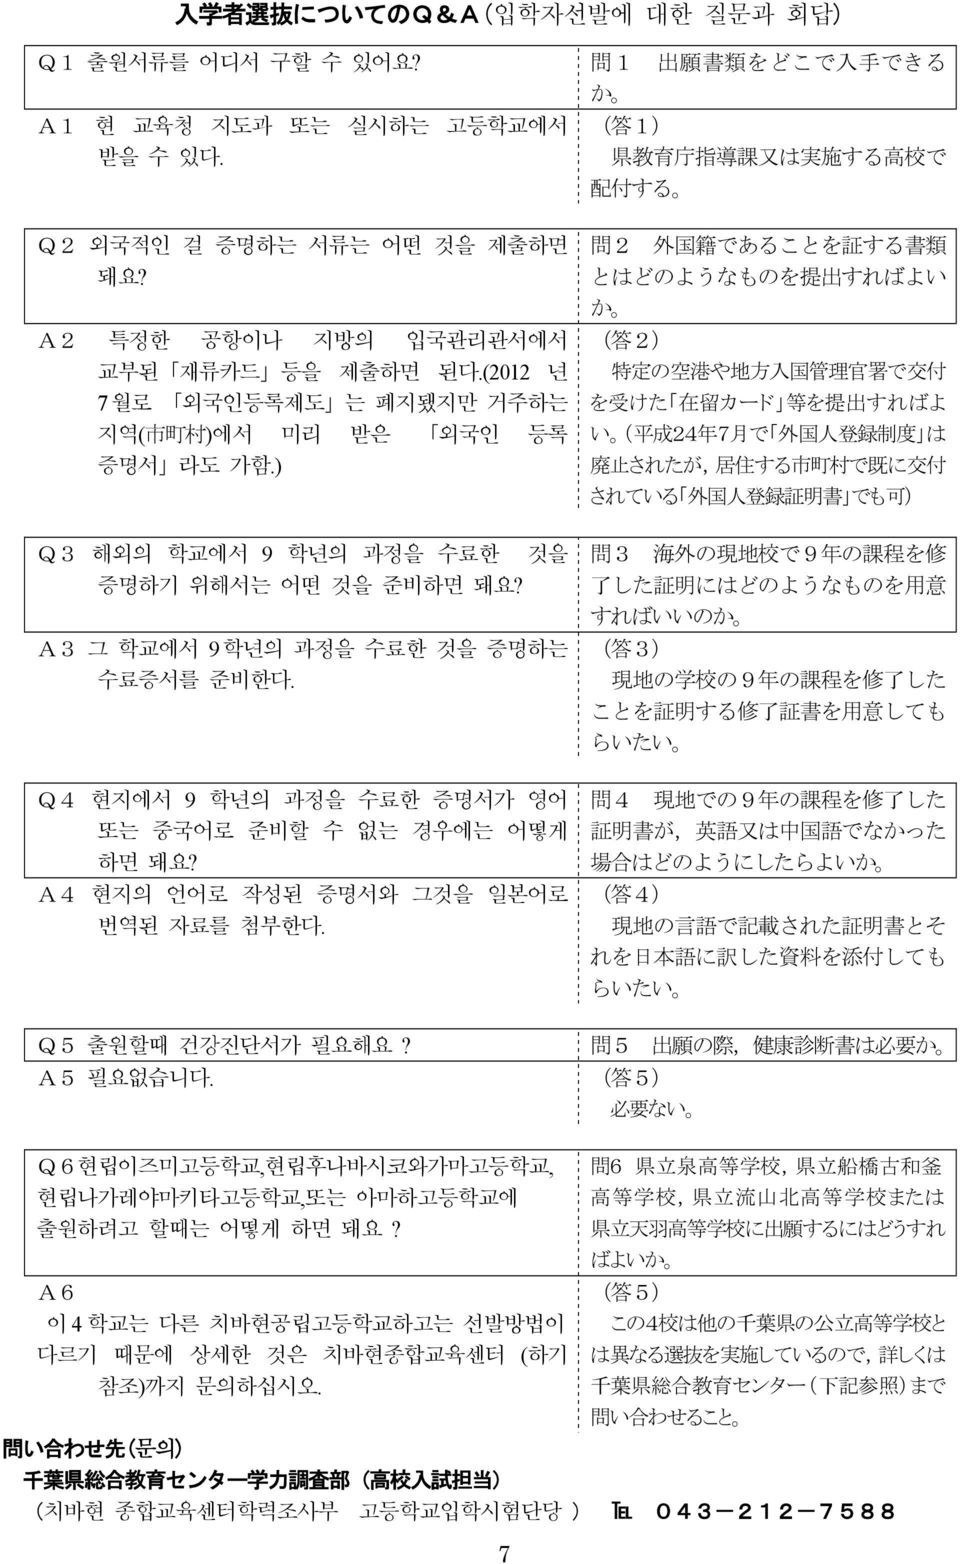 Q4 현지에서 9 학년의 과정을 수료한 증명서가 영어 또는 중국어로 준비할 수 없는 경우에는 어떻게 하면 돼요? A4 현지의 언어로 작성된 증명서와 그것을 일본어로 번역된 자료를 첨부한다.